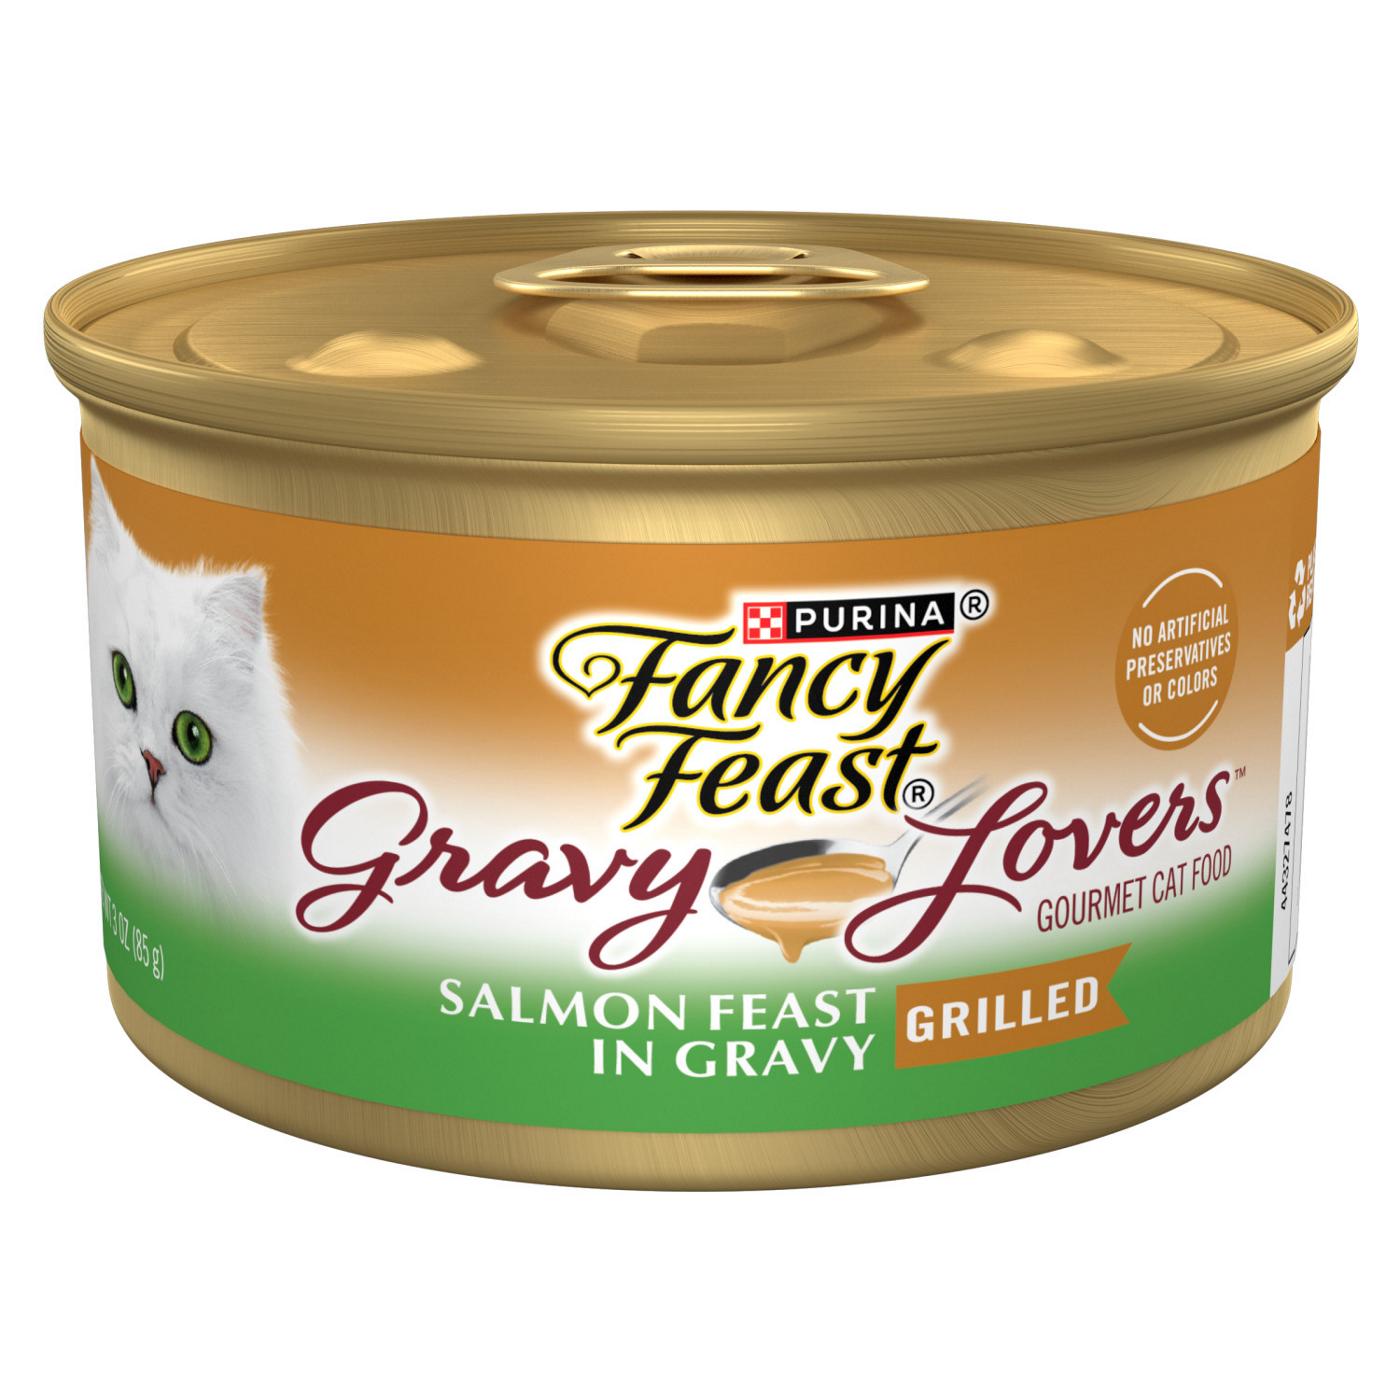 Fancy Feast Gravy Lovers Salmon Feast Wet Cat Food; image 1 of 5